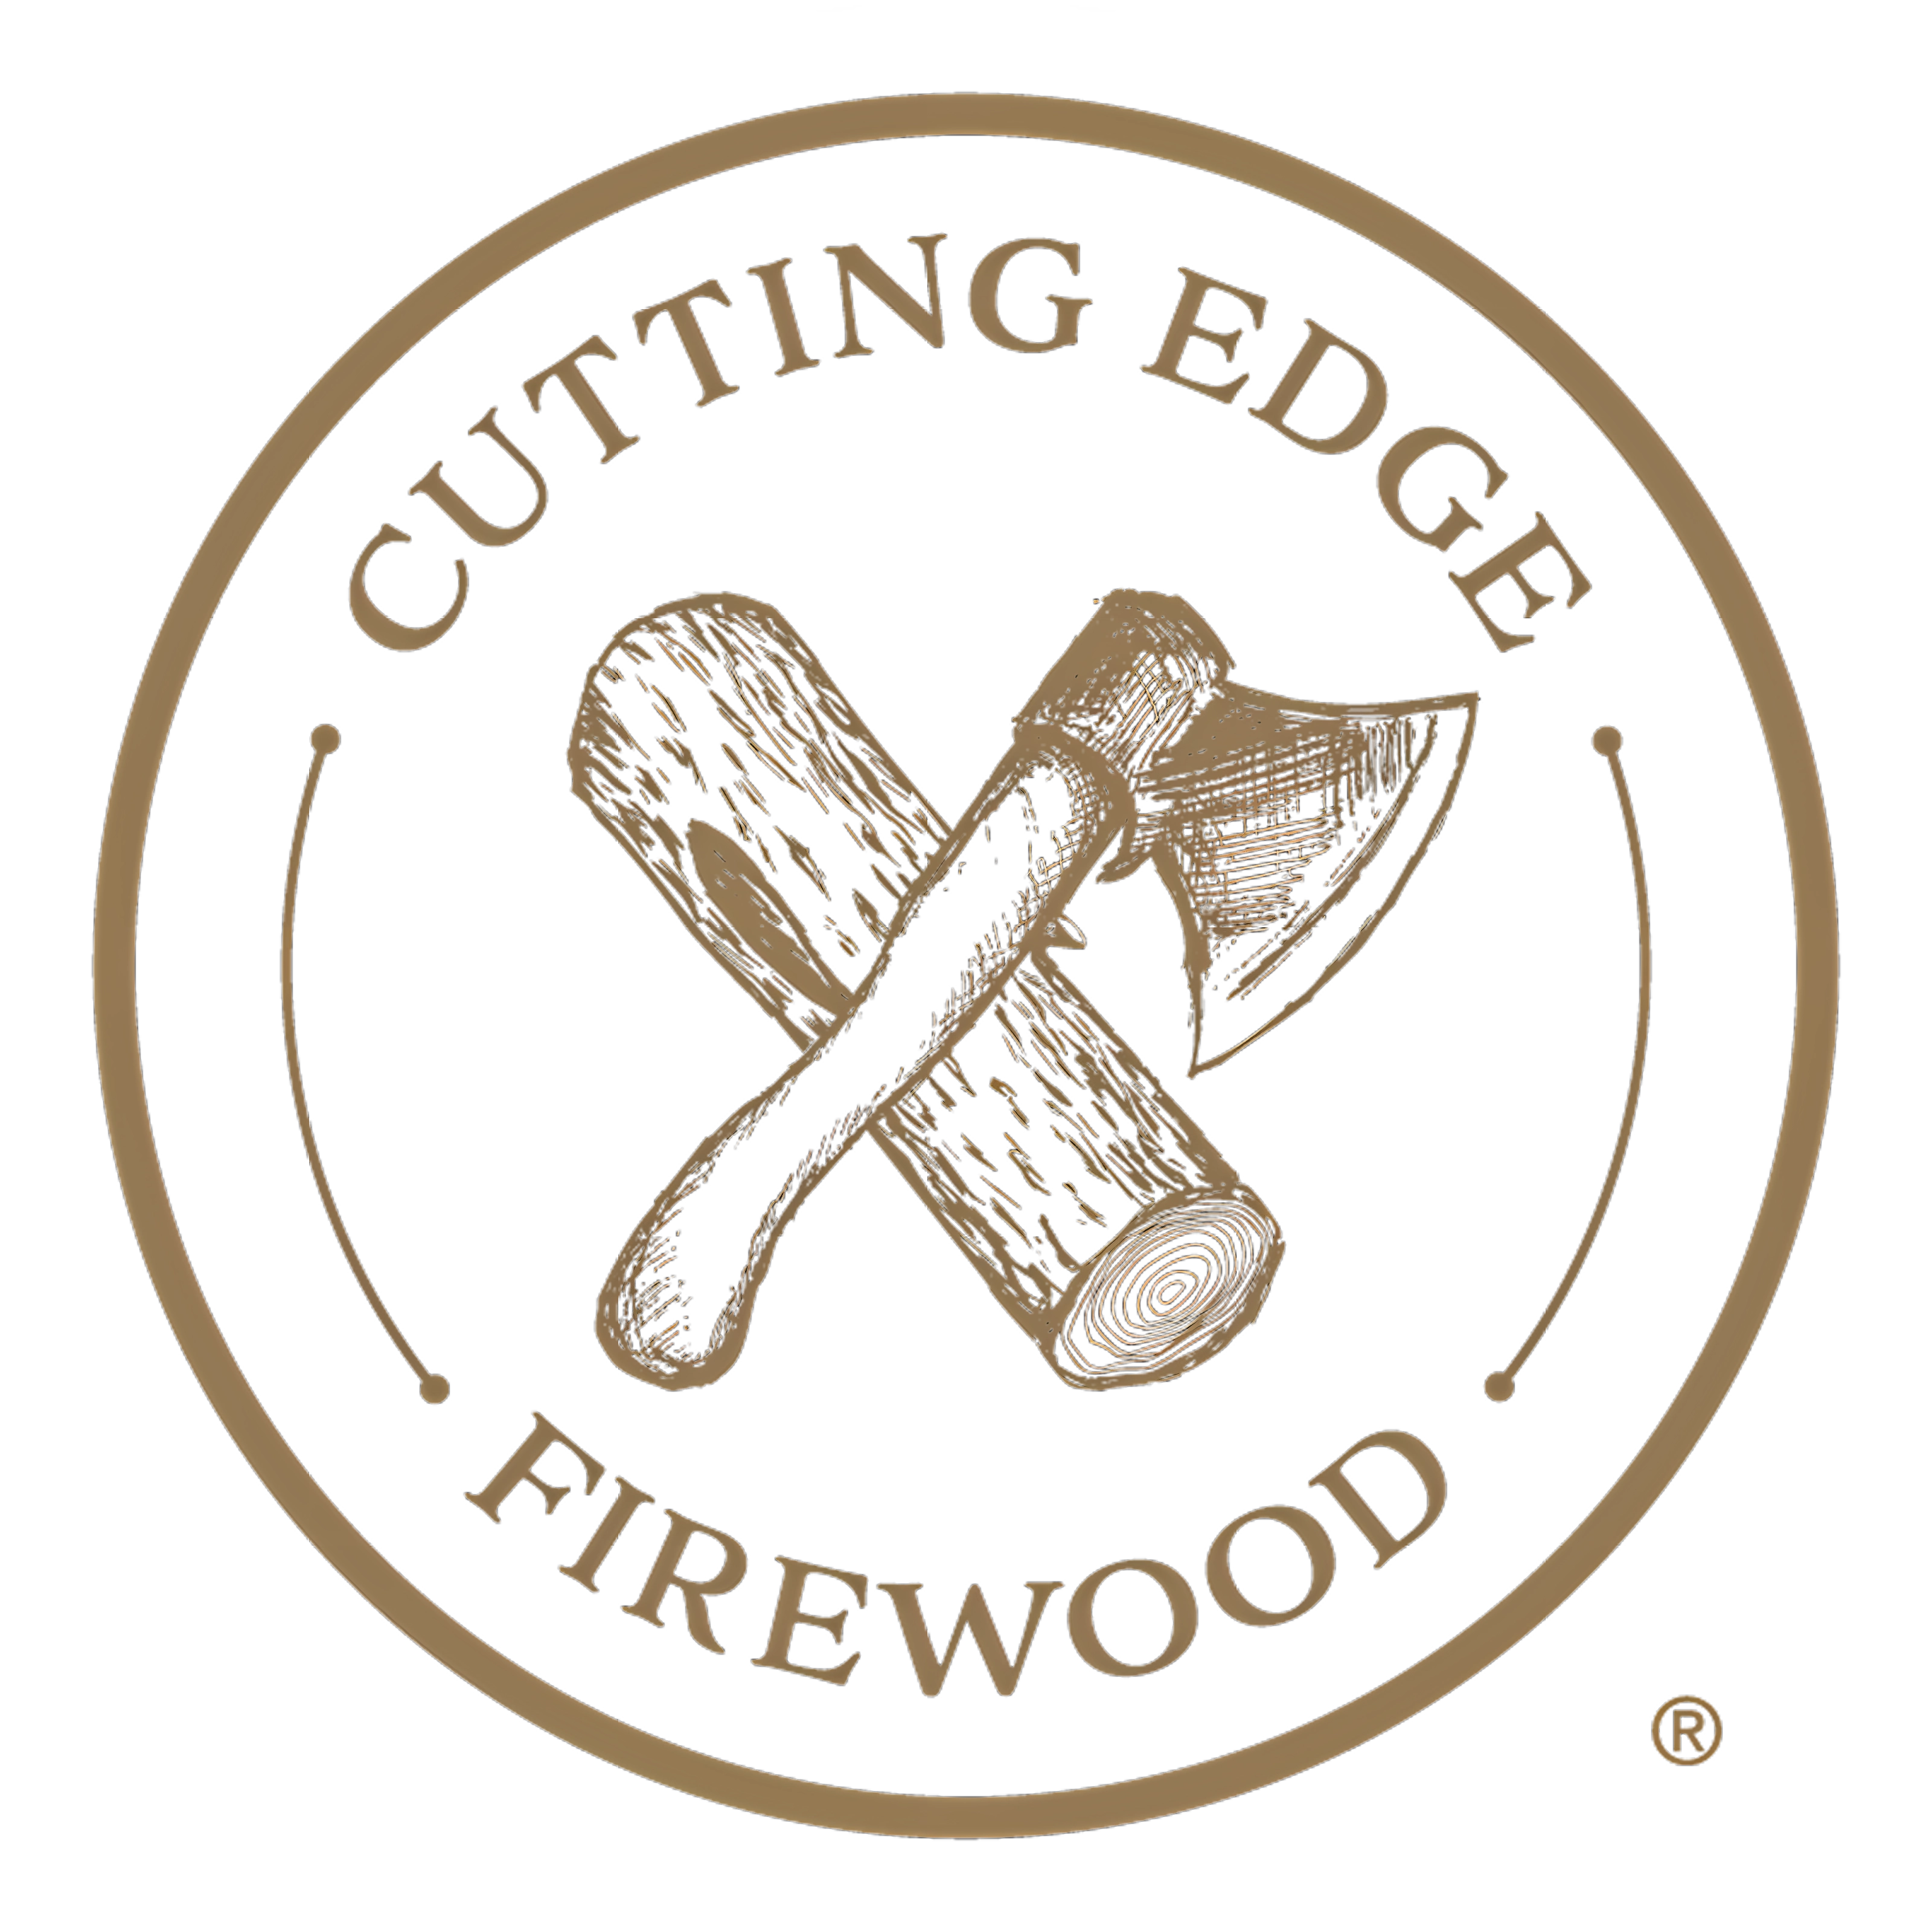 www.cuttingedgefirewood.com